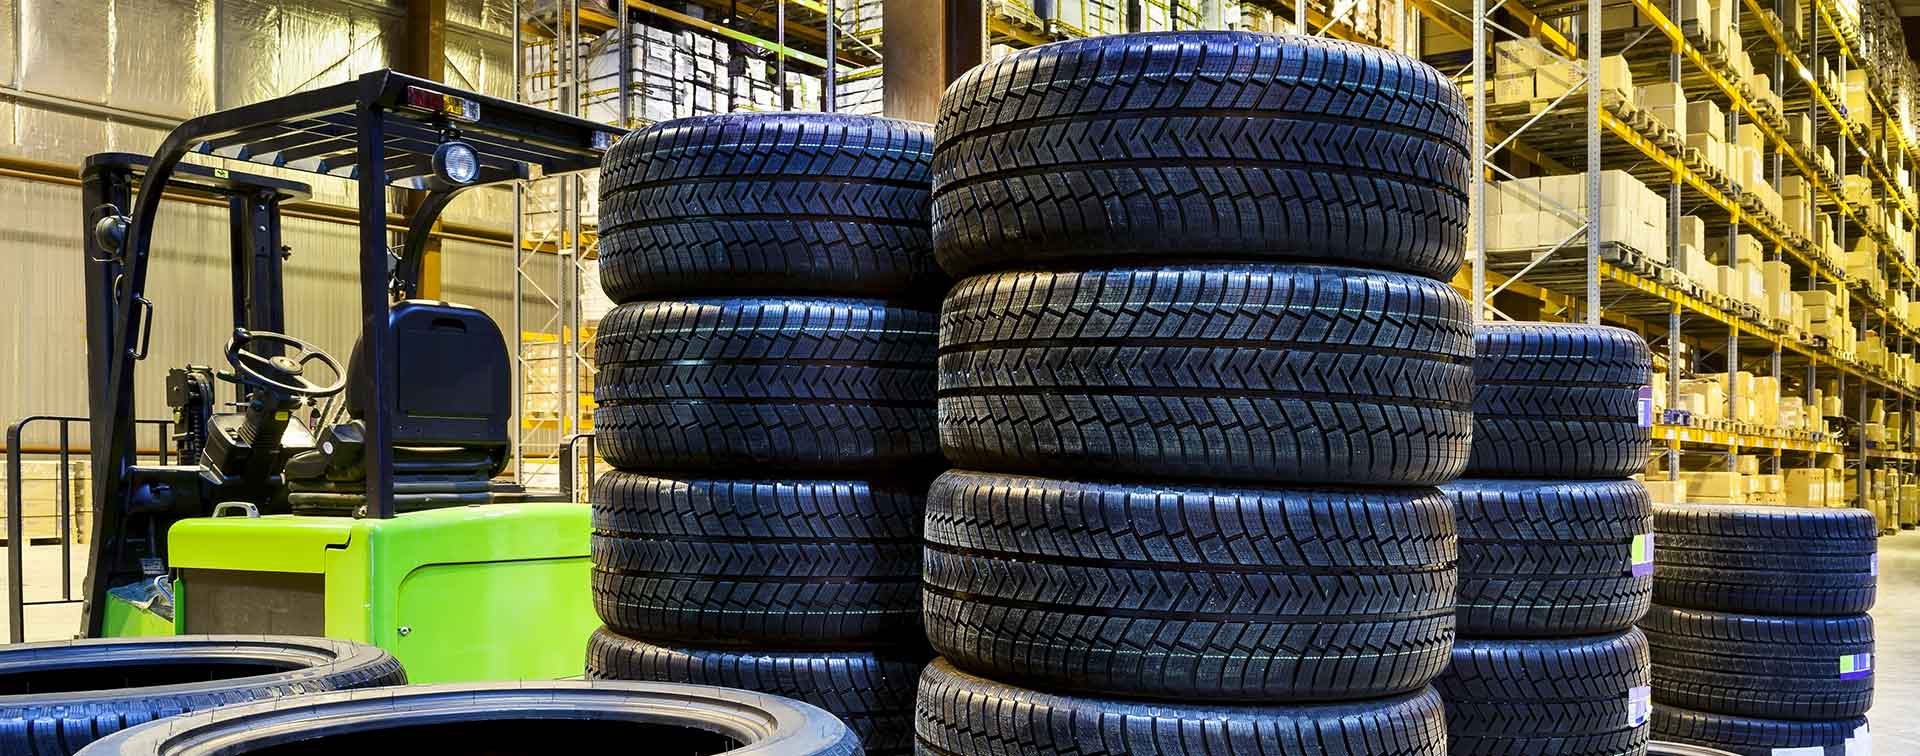 Triagem & Remessa de pneus